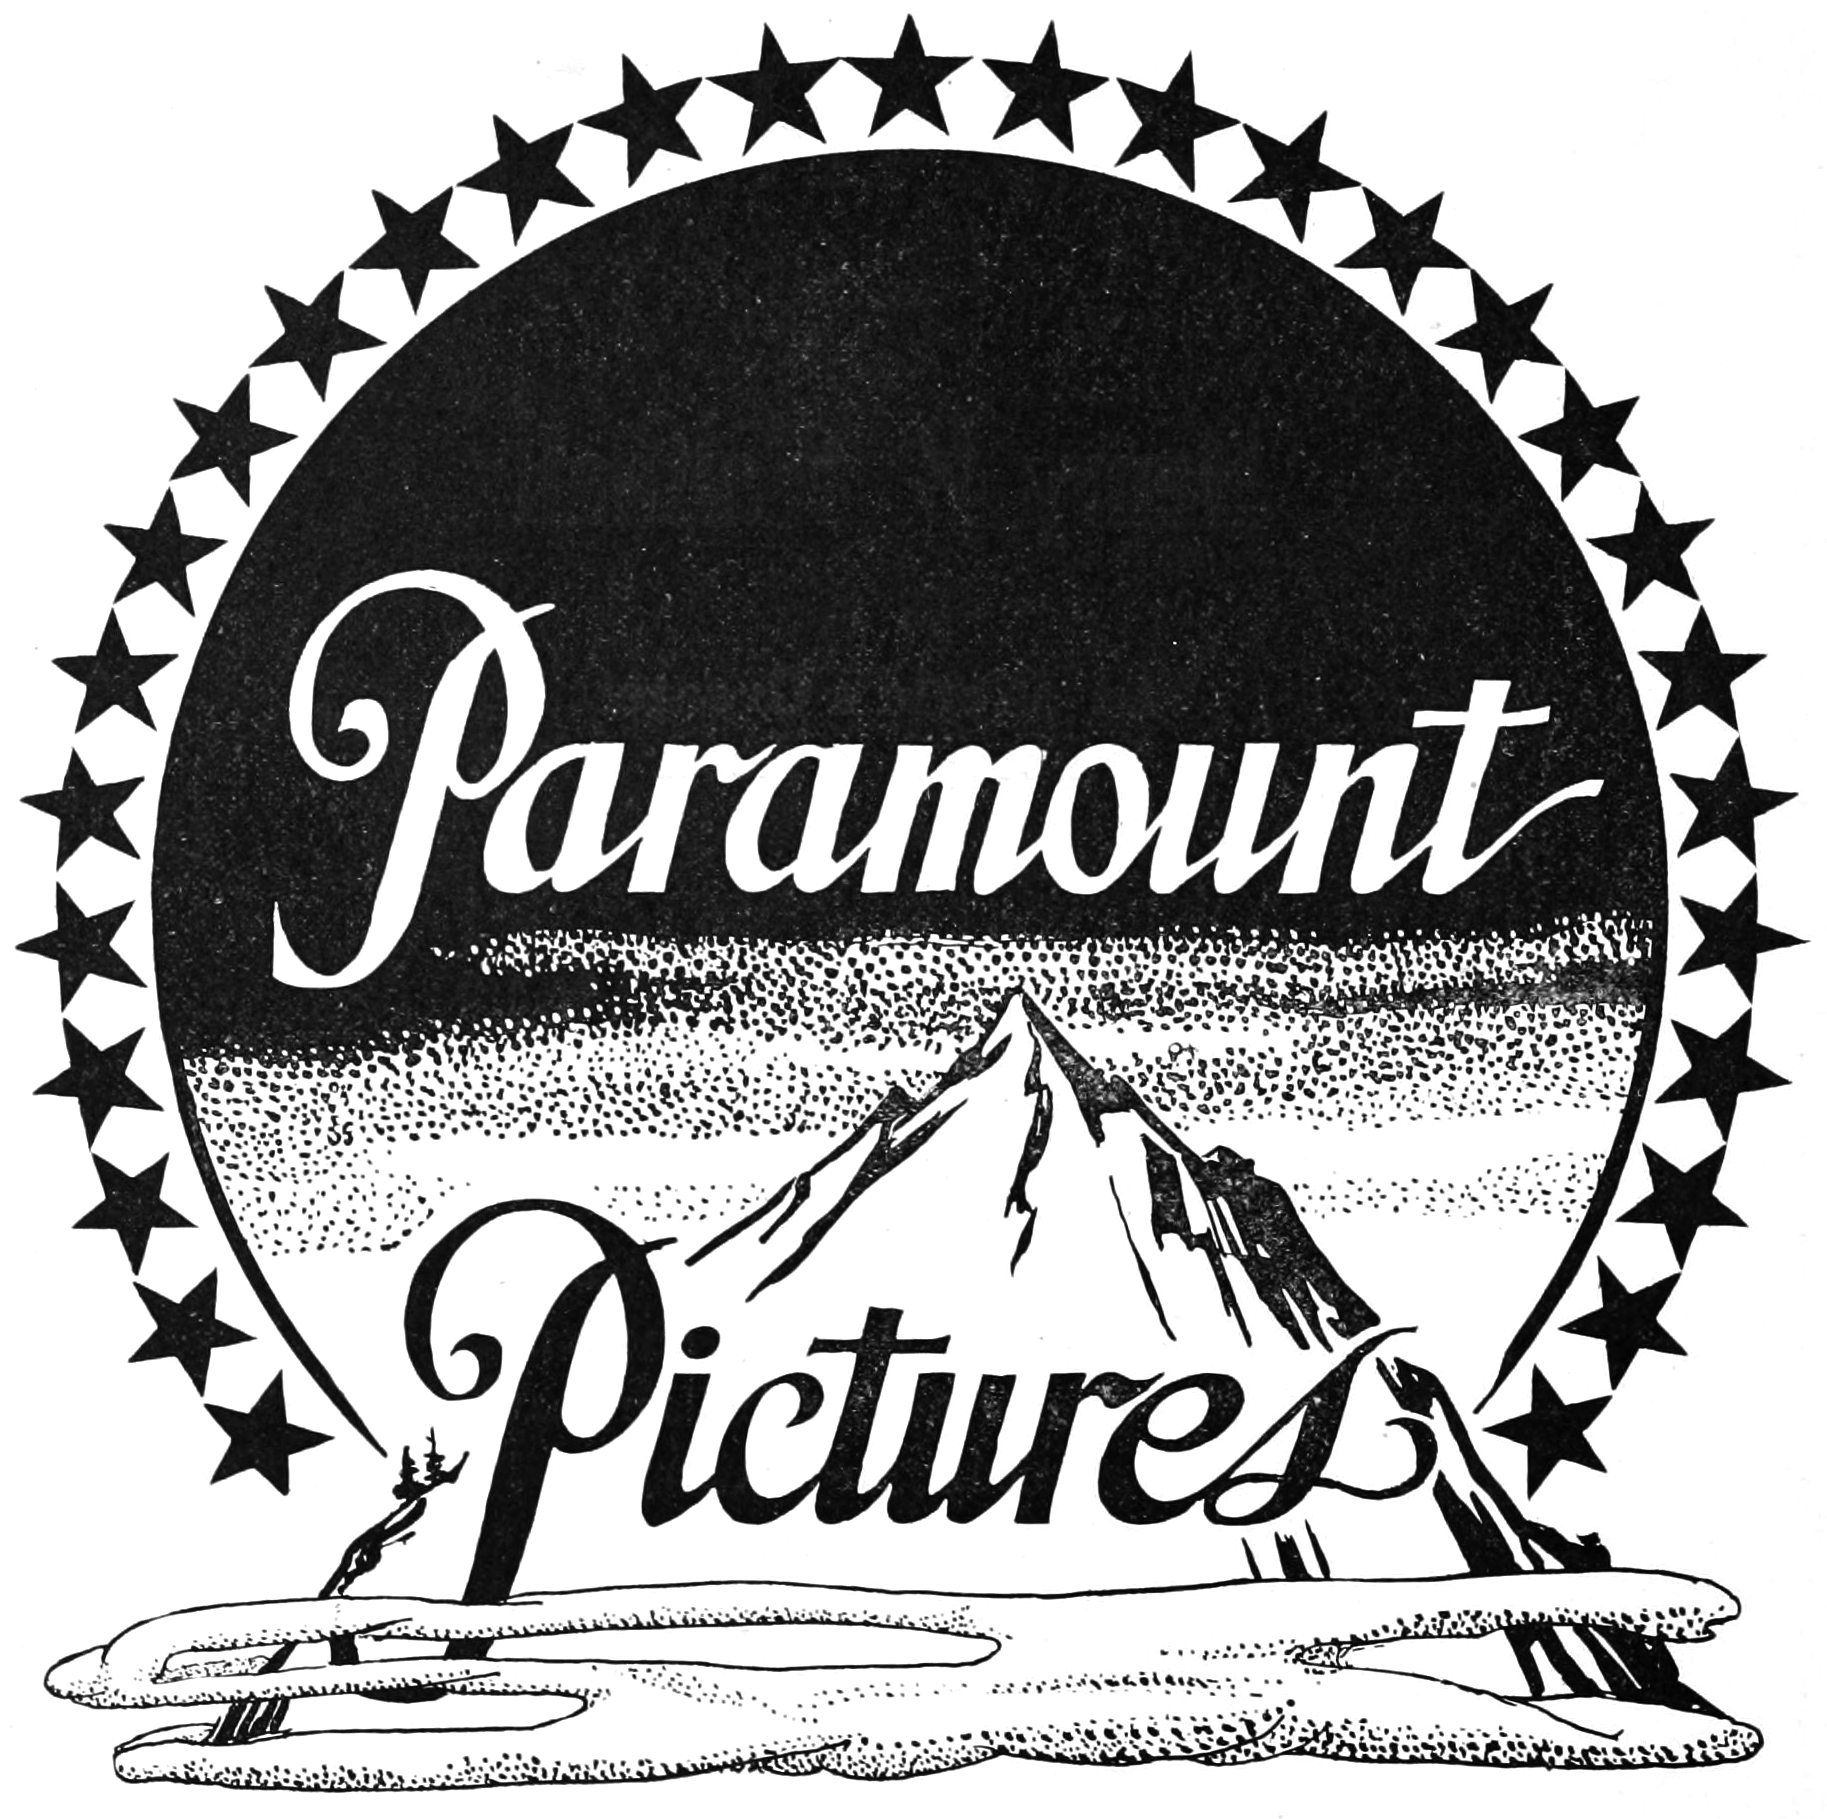 Paramount pictures. Парамаунт Пикчерз. Paramount логотип. Киностудия Paramount. Парамаунт Пикчерз логотип.